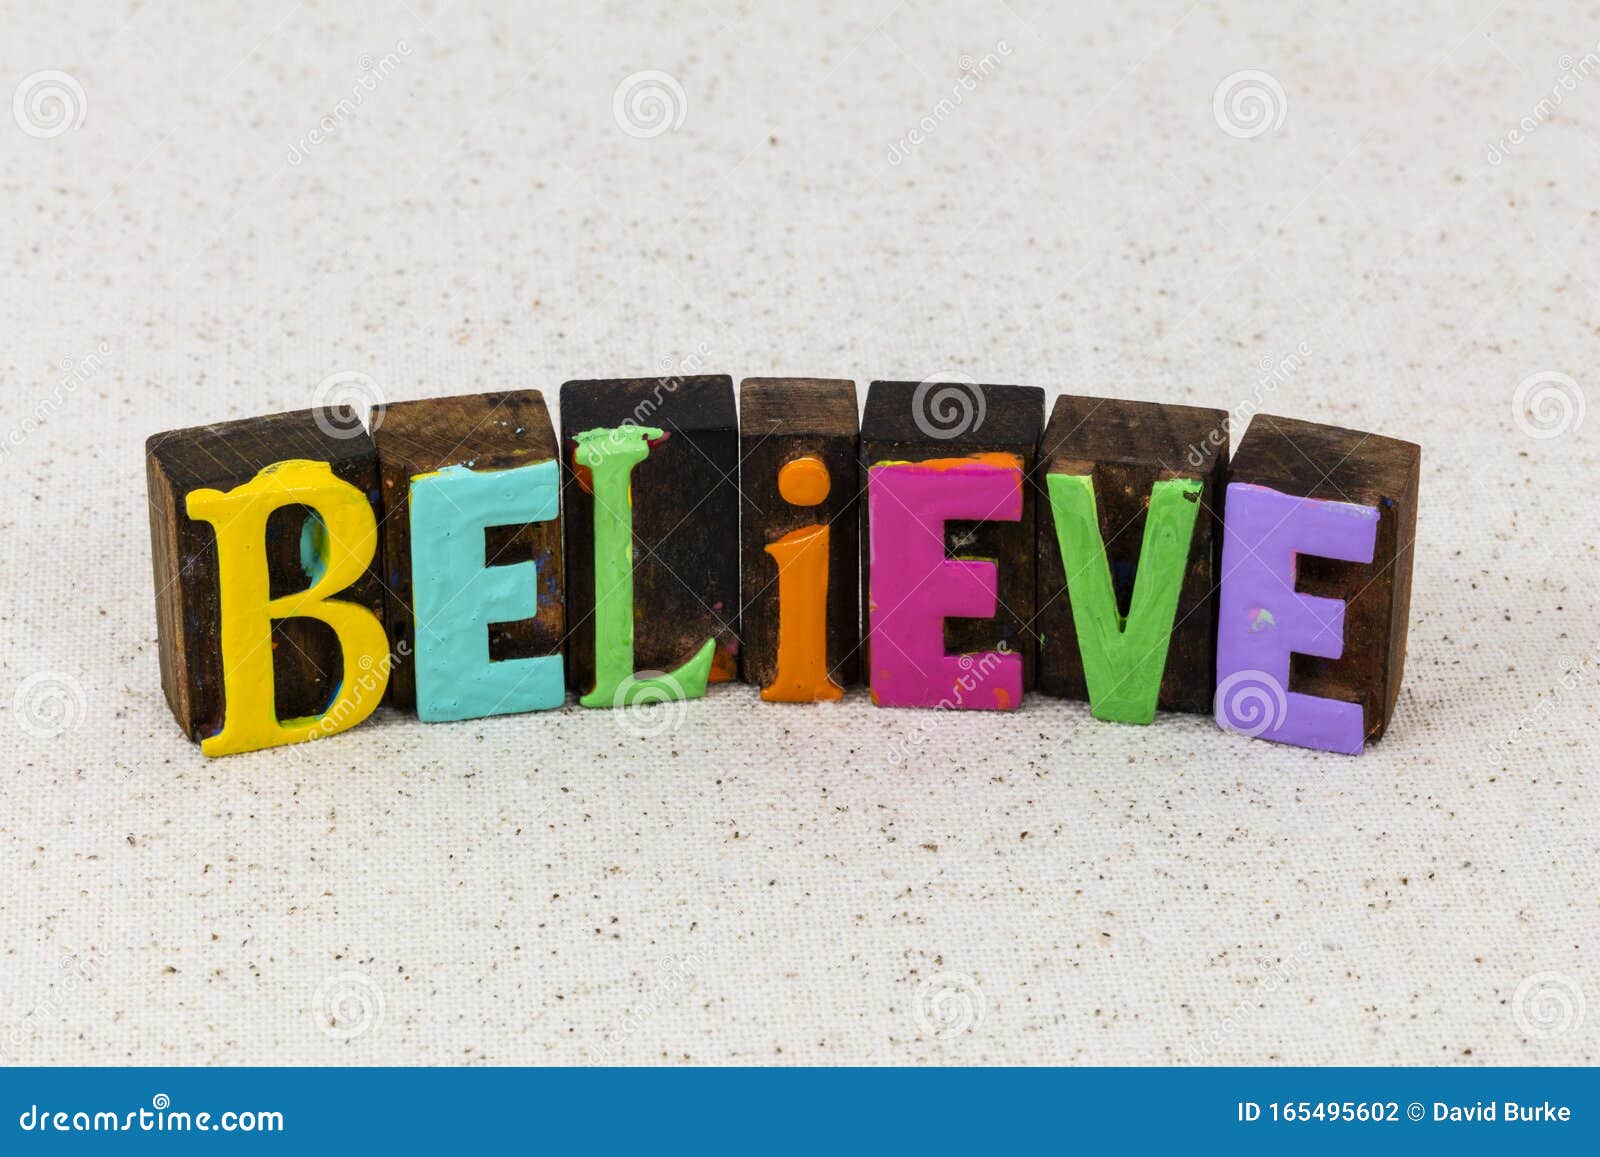 believe yourself faith hope love trust dream magic positive attitude belief